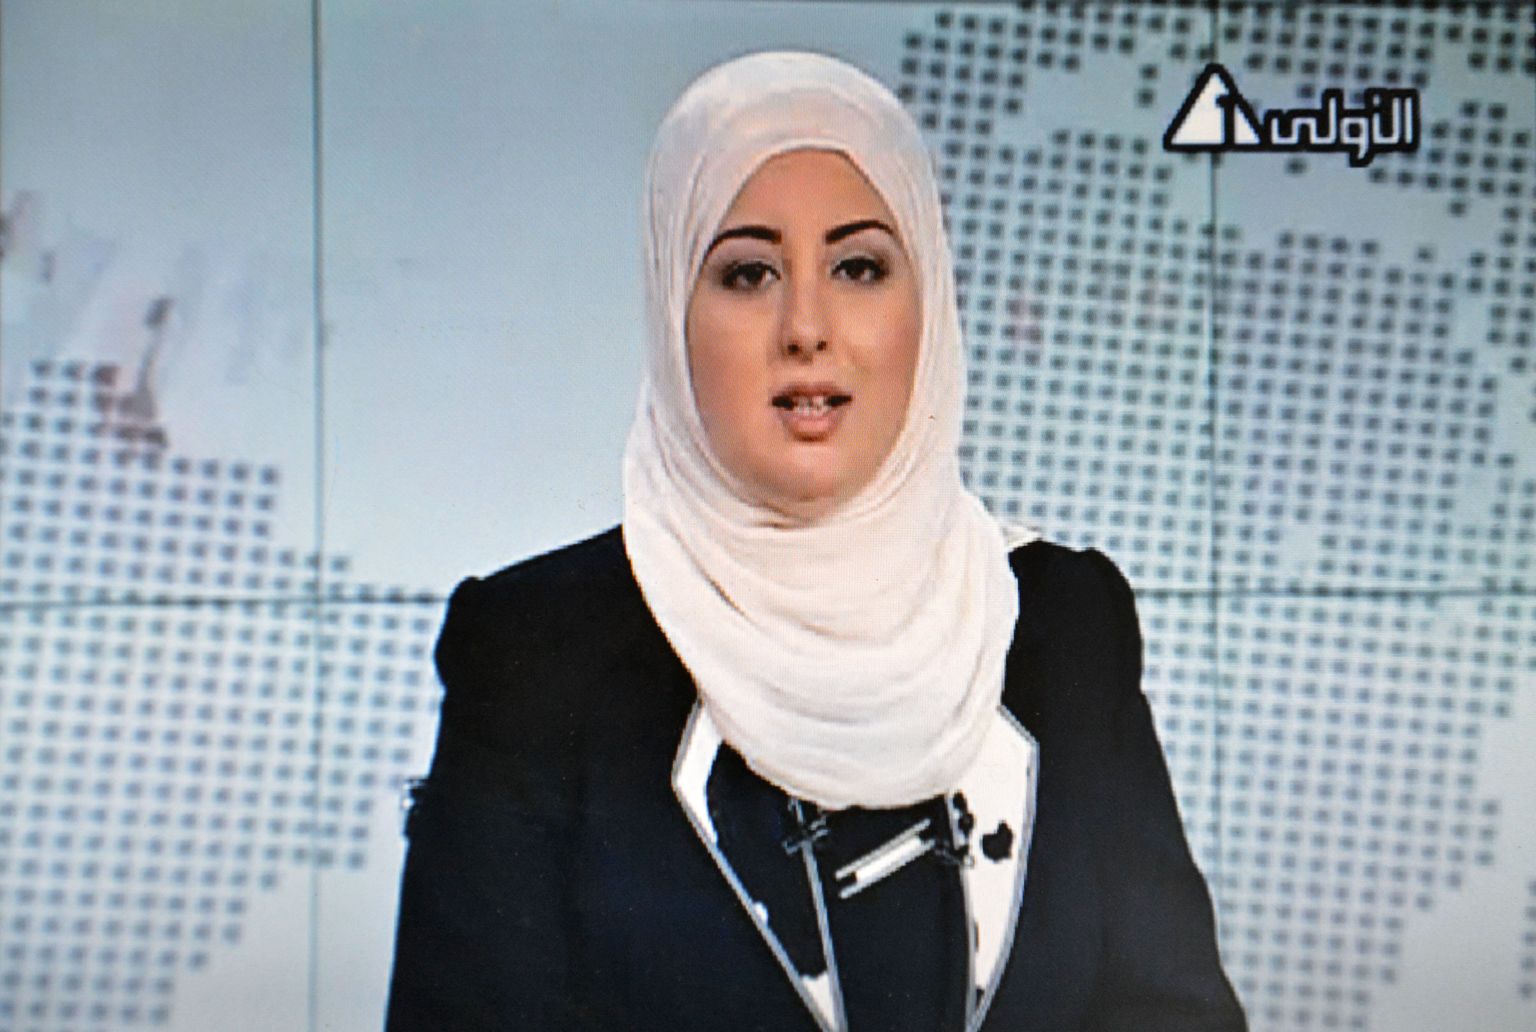 Egiptuse televisioonis luges esmakordselt uudiseid rätikuga uudisteankur